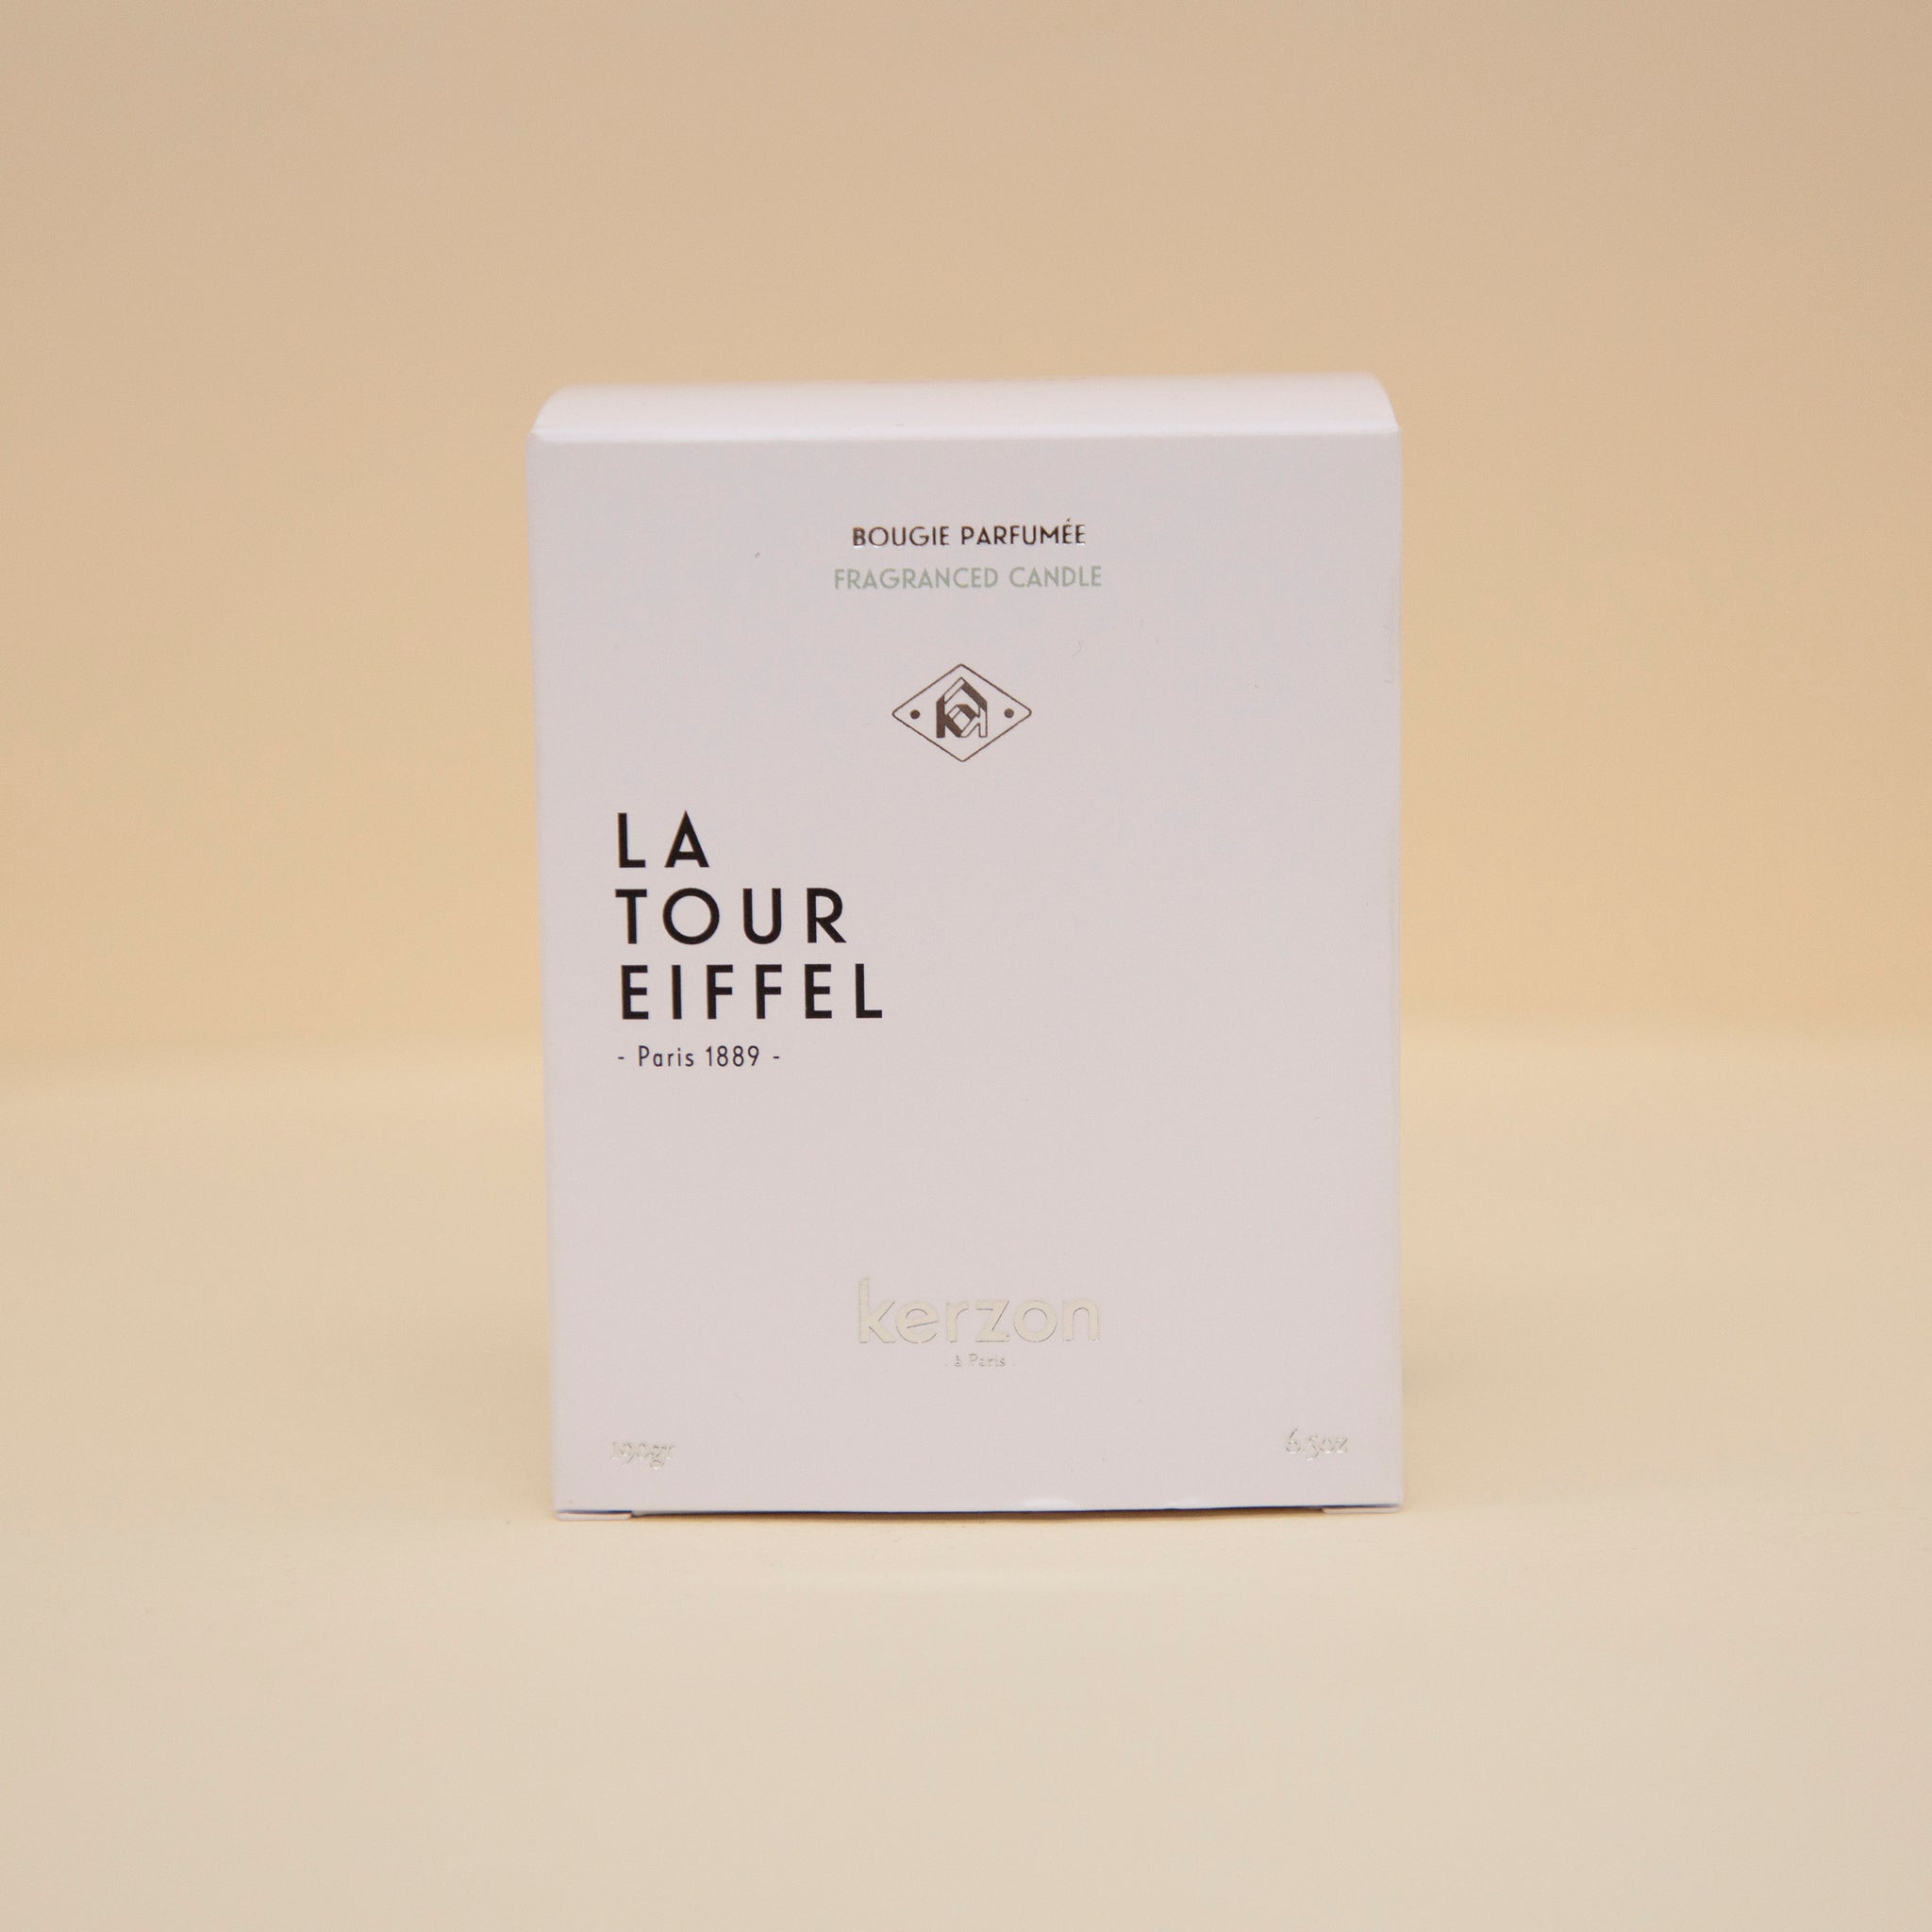 Bougie parfumée - La Tour Eiffel